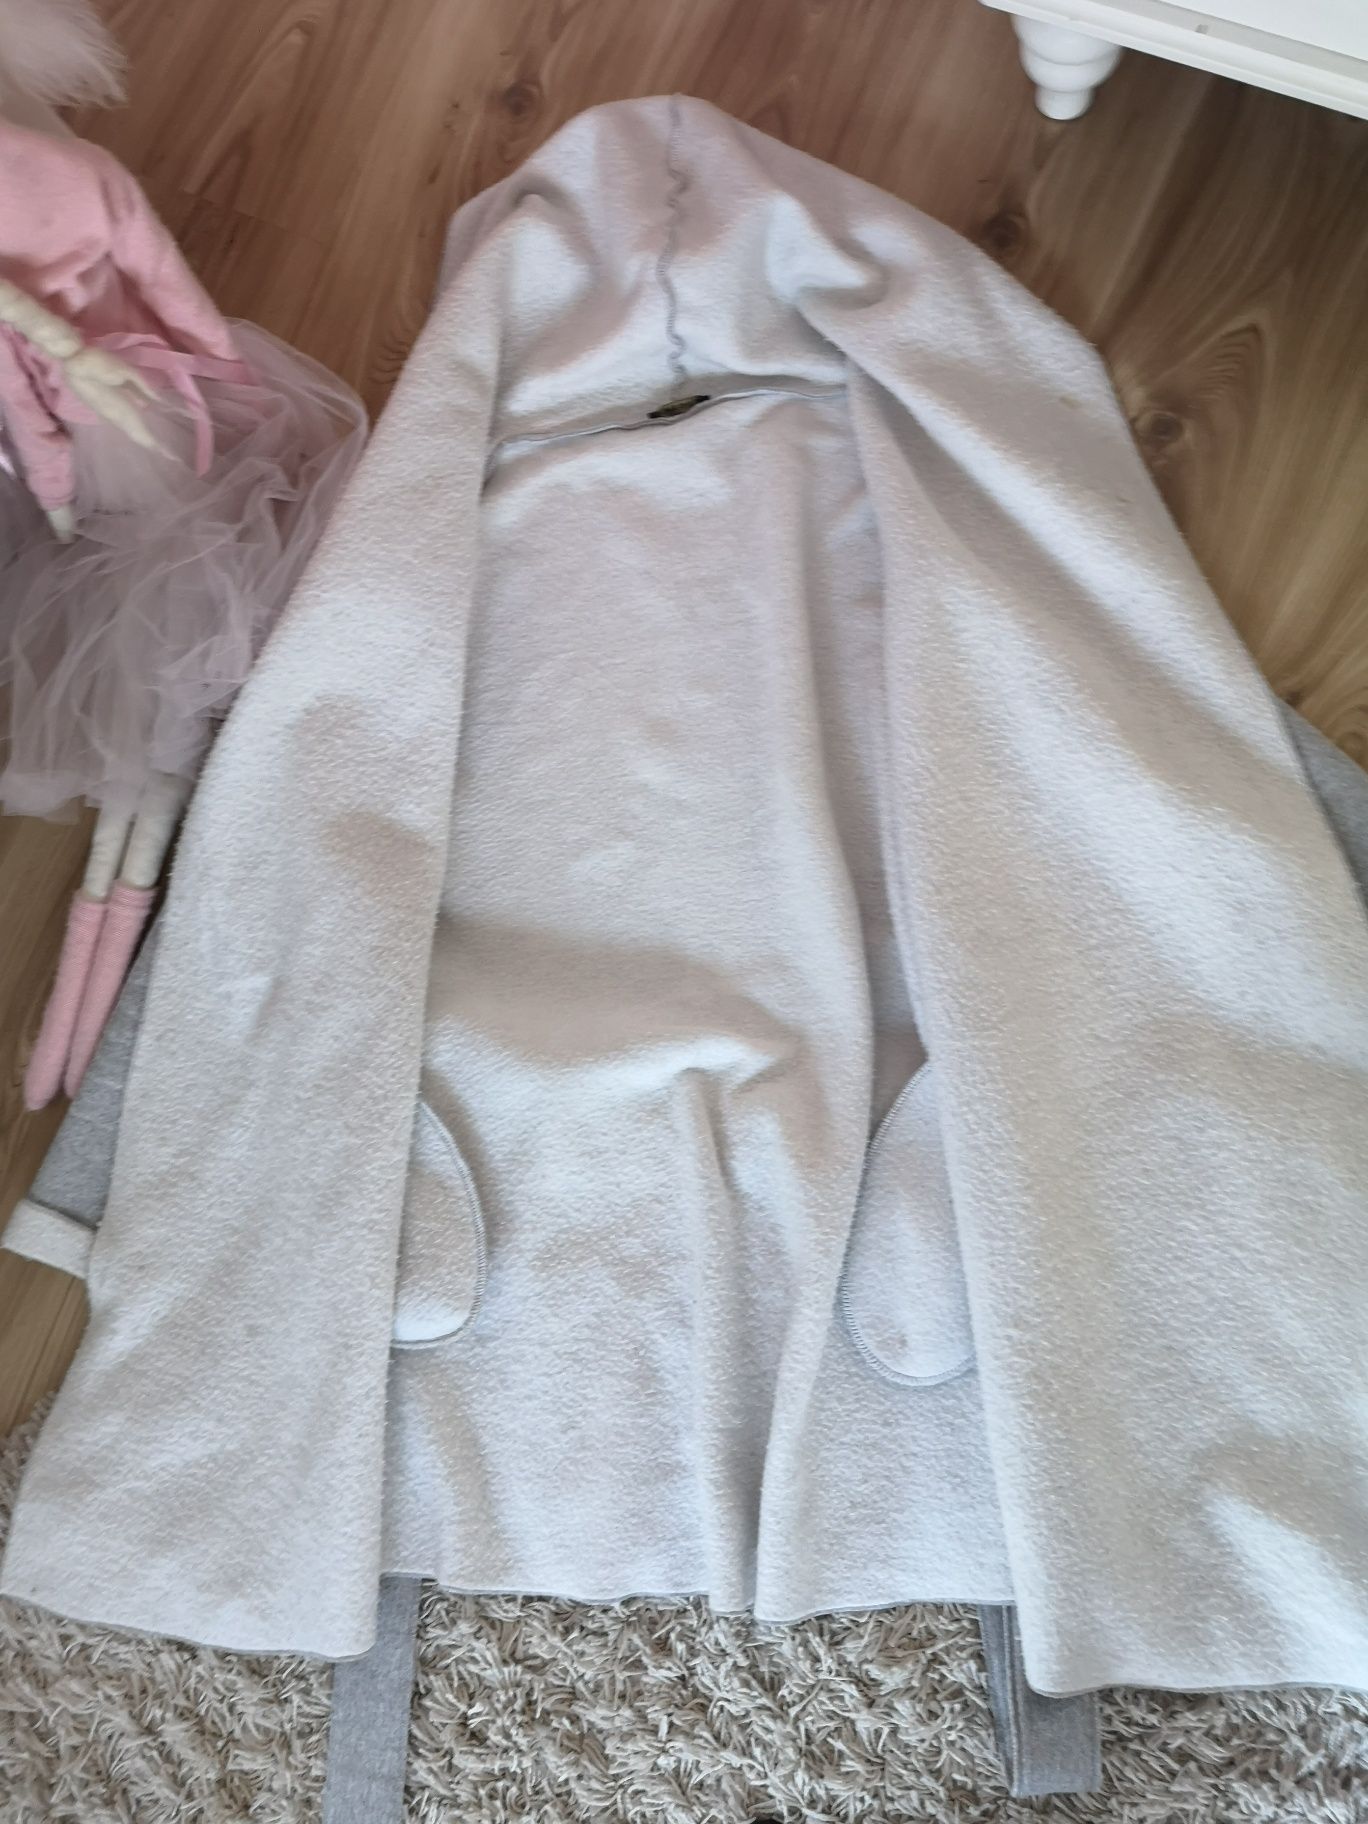 Kardigan sweter płaszczyk biało-szary szlafrokowy rozmiar M L